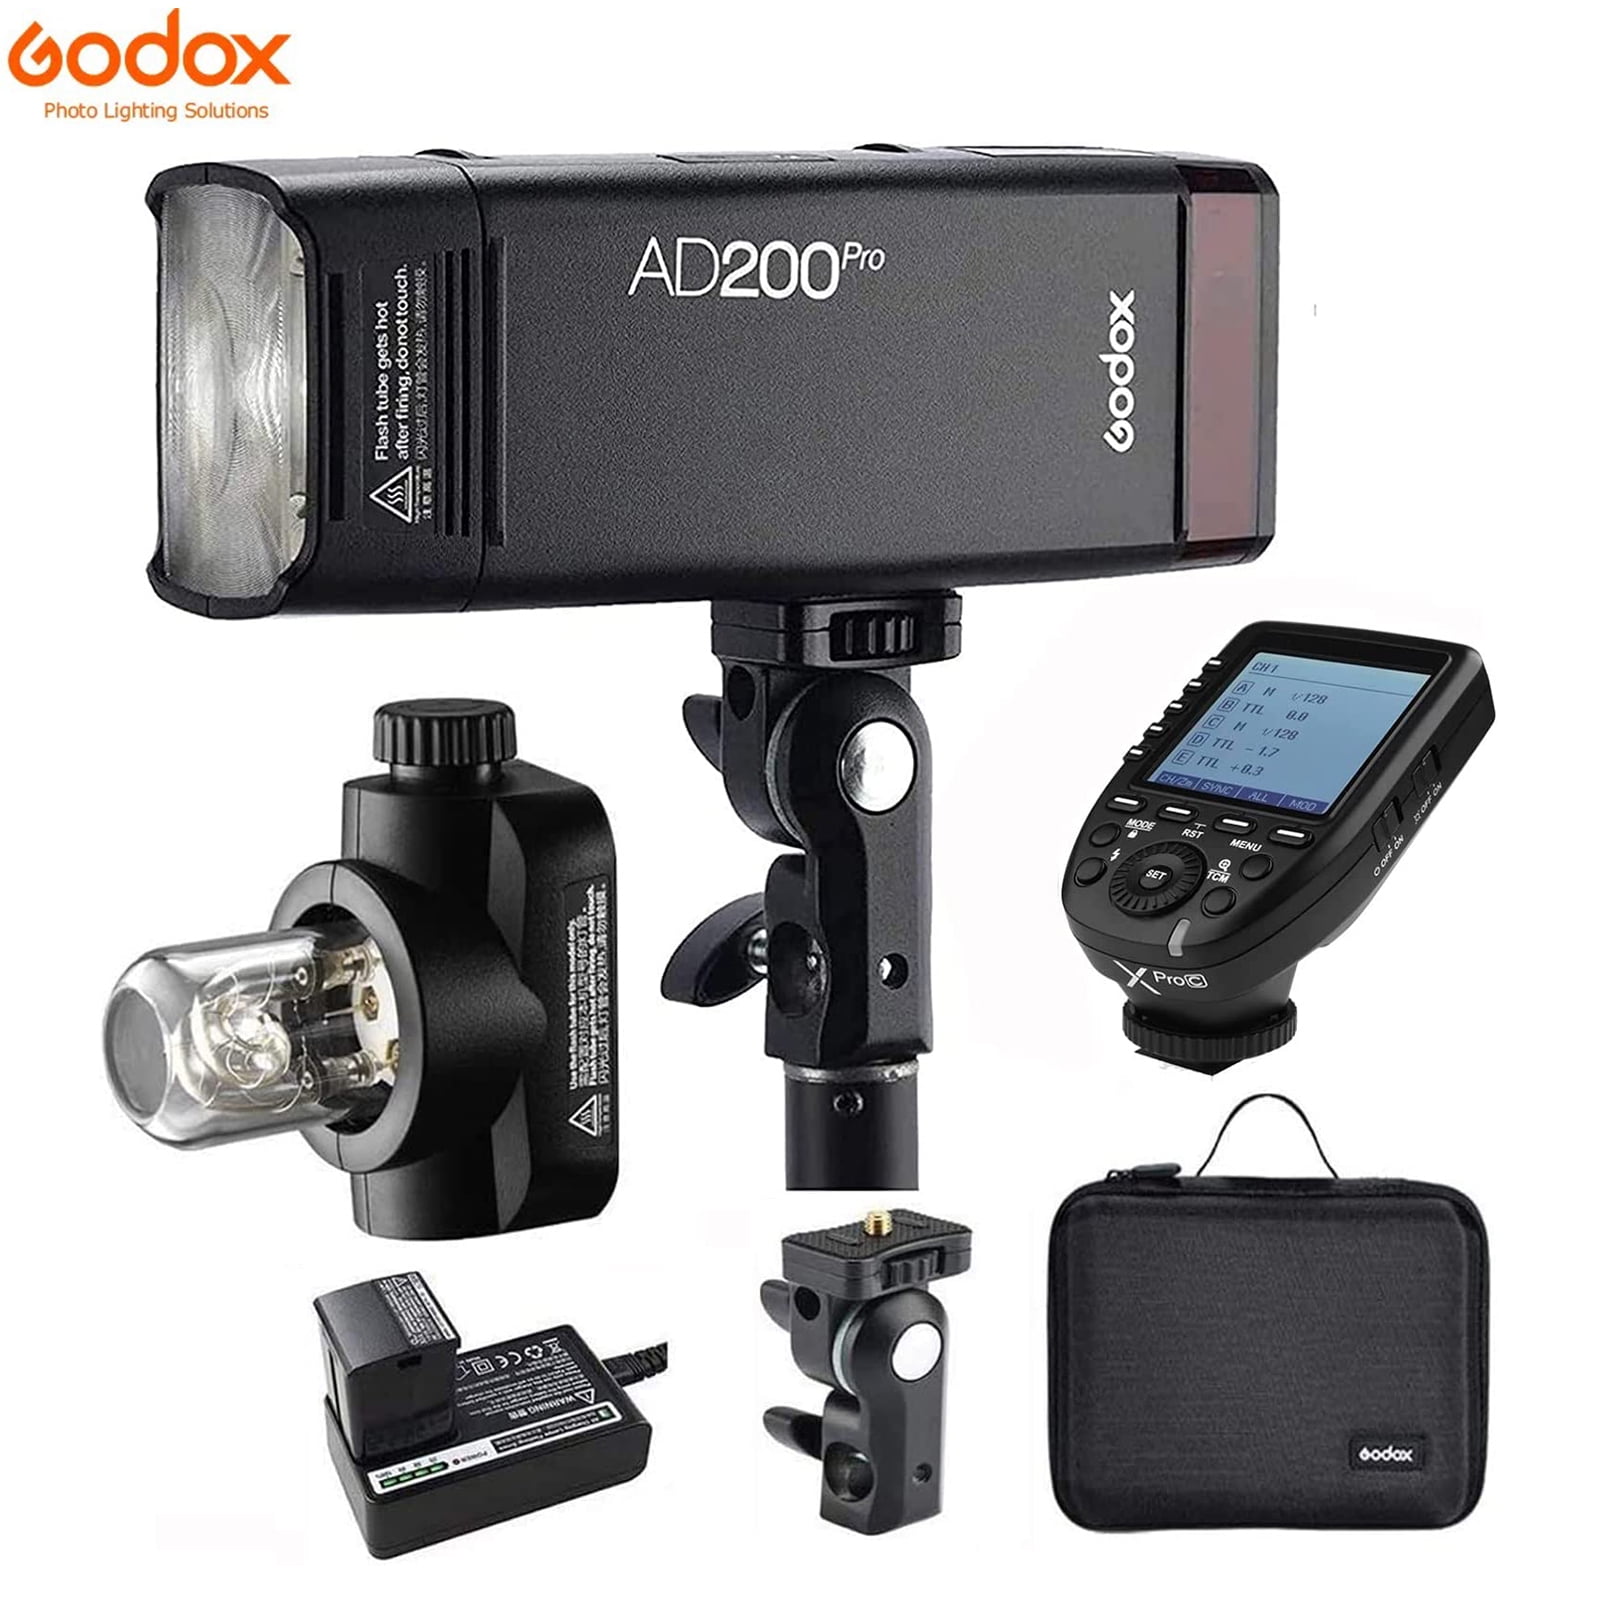 Godox AD200 Pro Godox AD200Pro Flash XPro-C Flash Trigger for